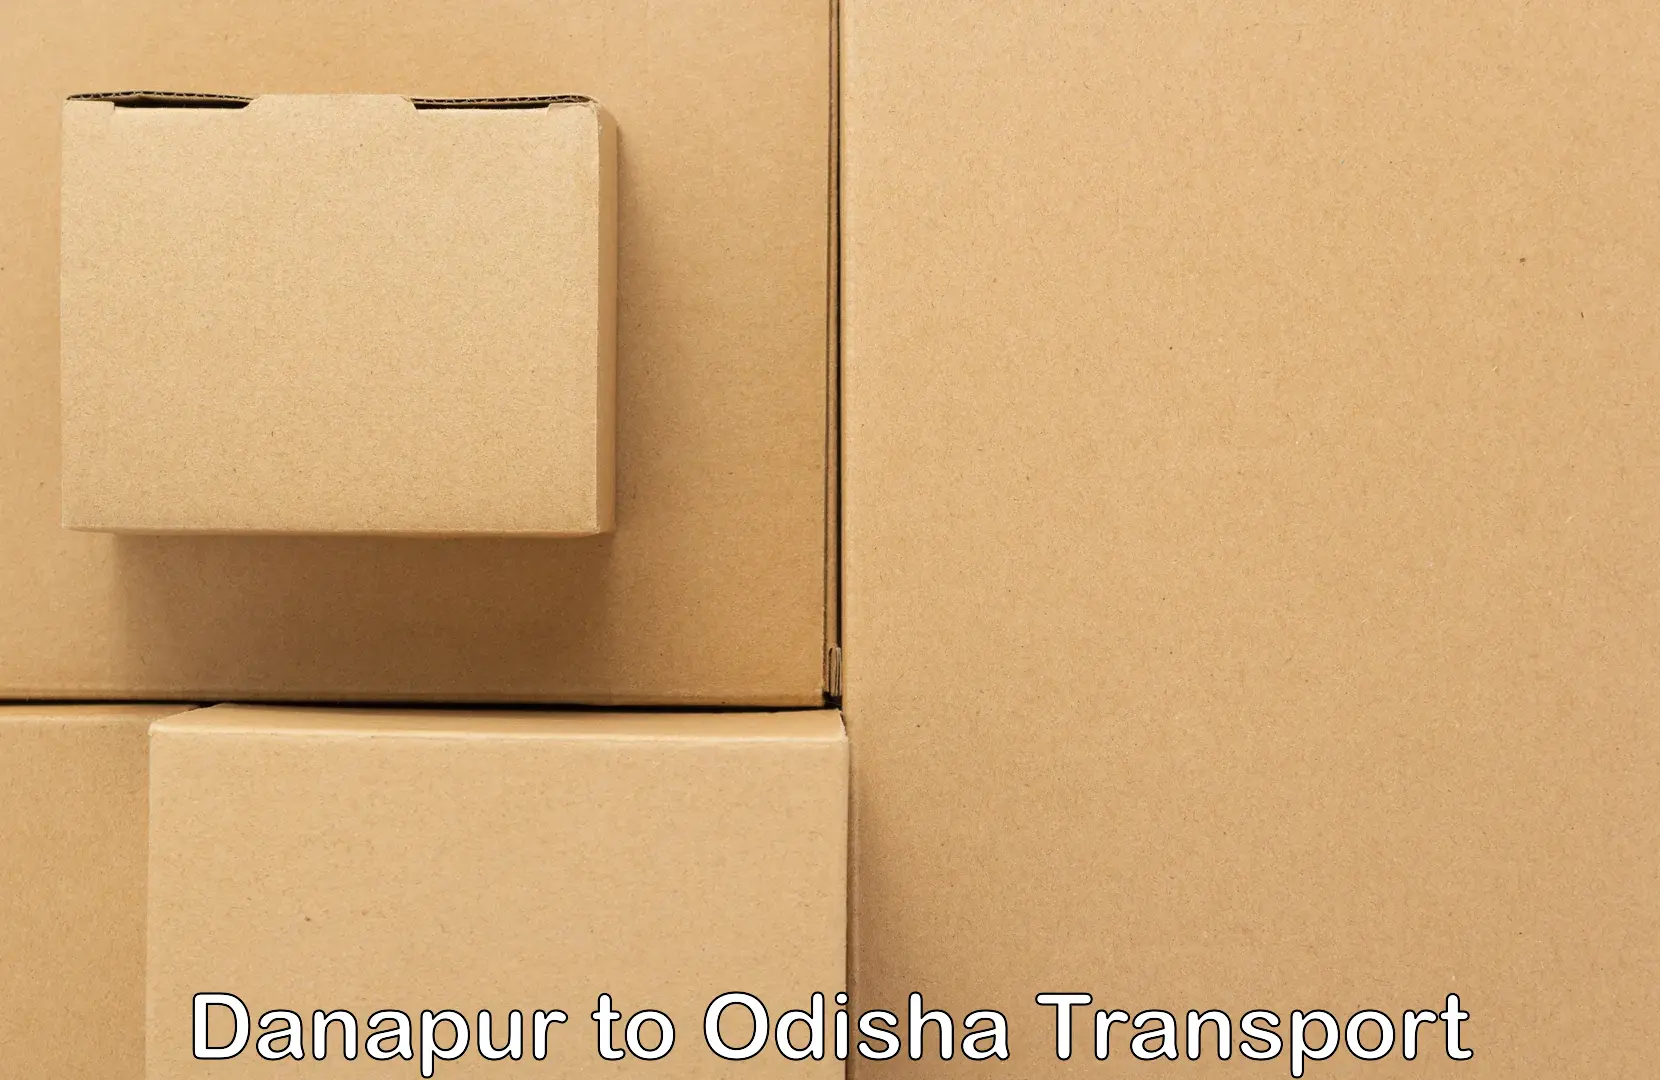 Container transportation services Danapur to Mahakalapada